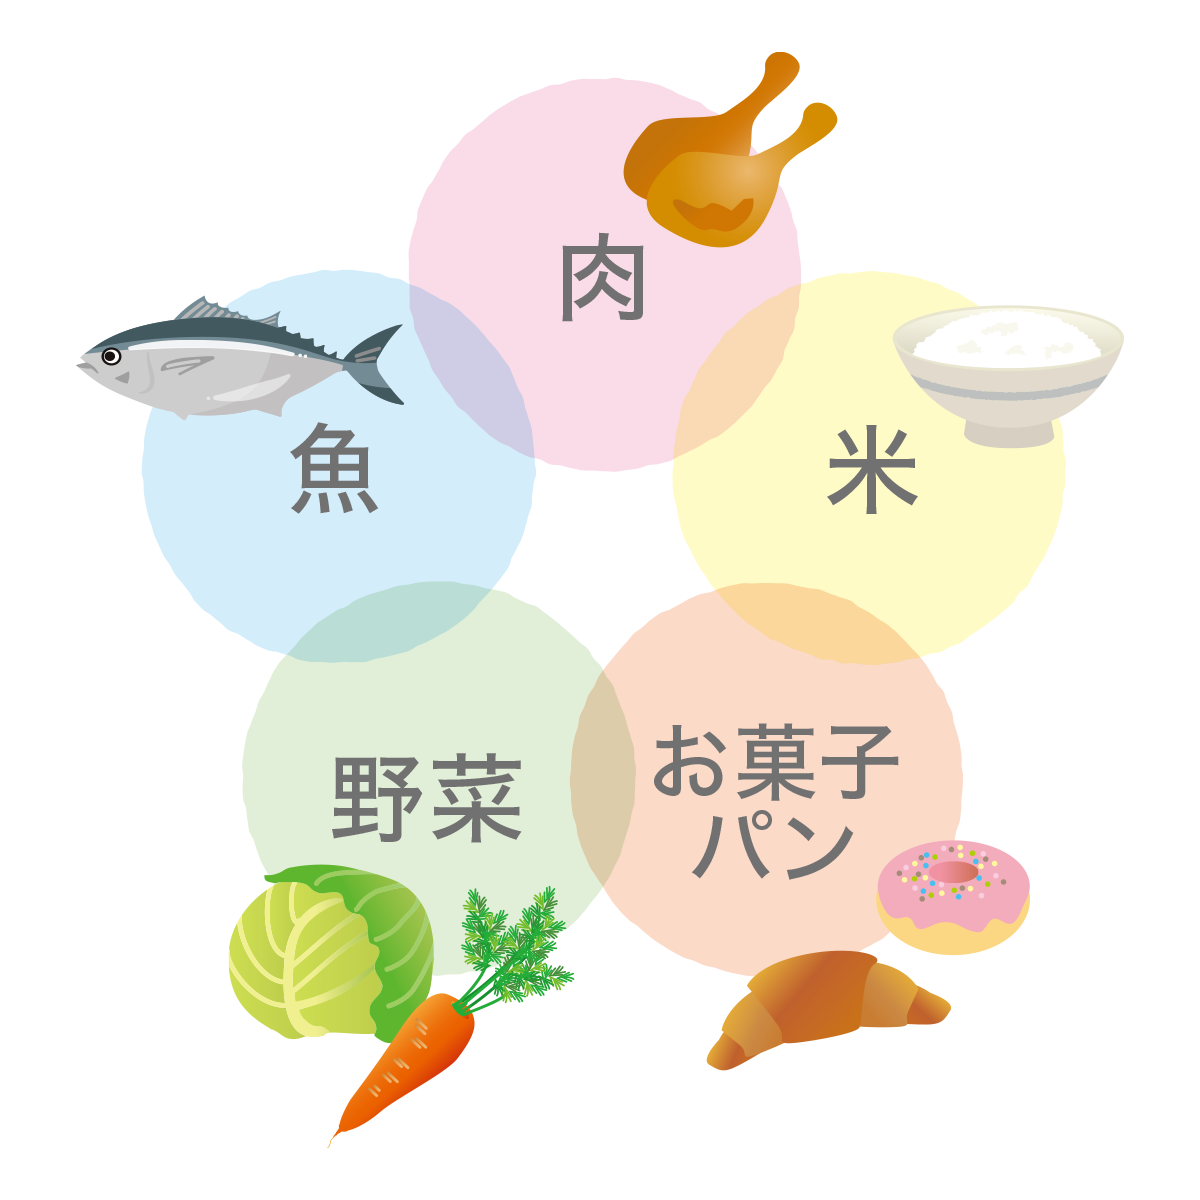 肉 / 魚 / 野菜 / お菓子、パン / 米